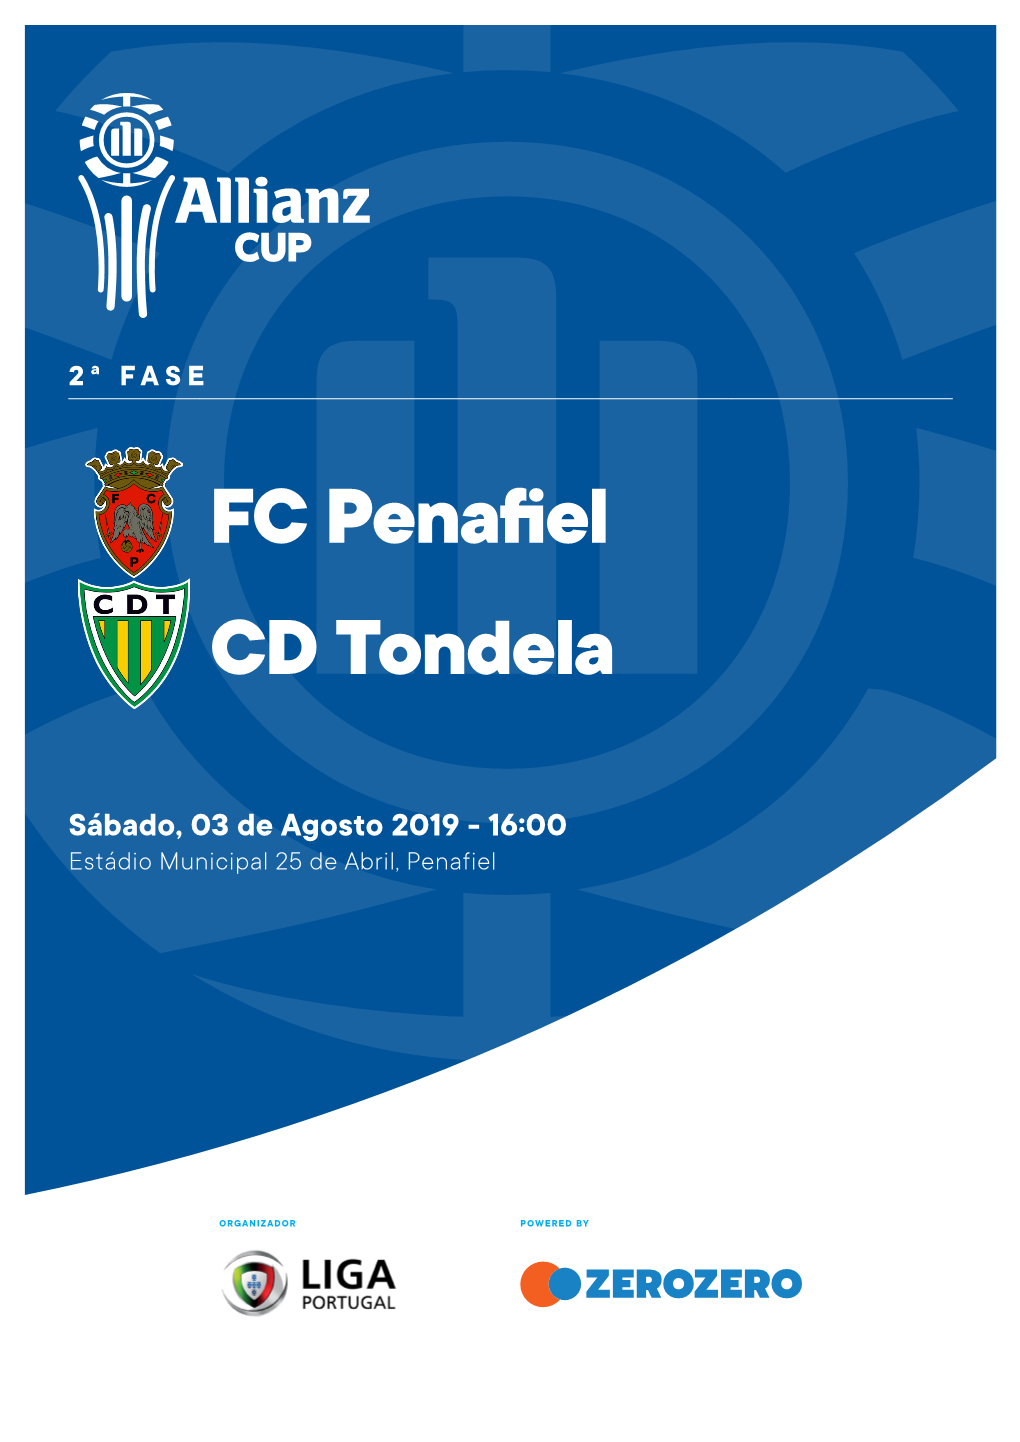 FC Penafiel CD Tondela